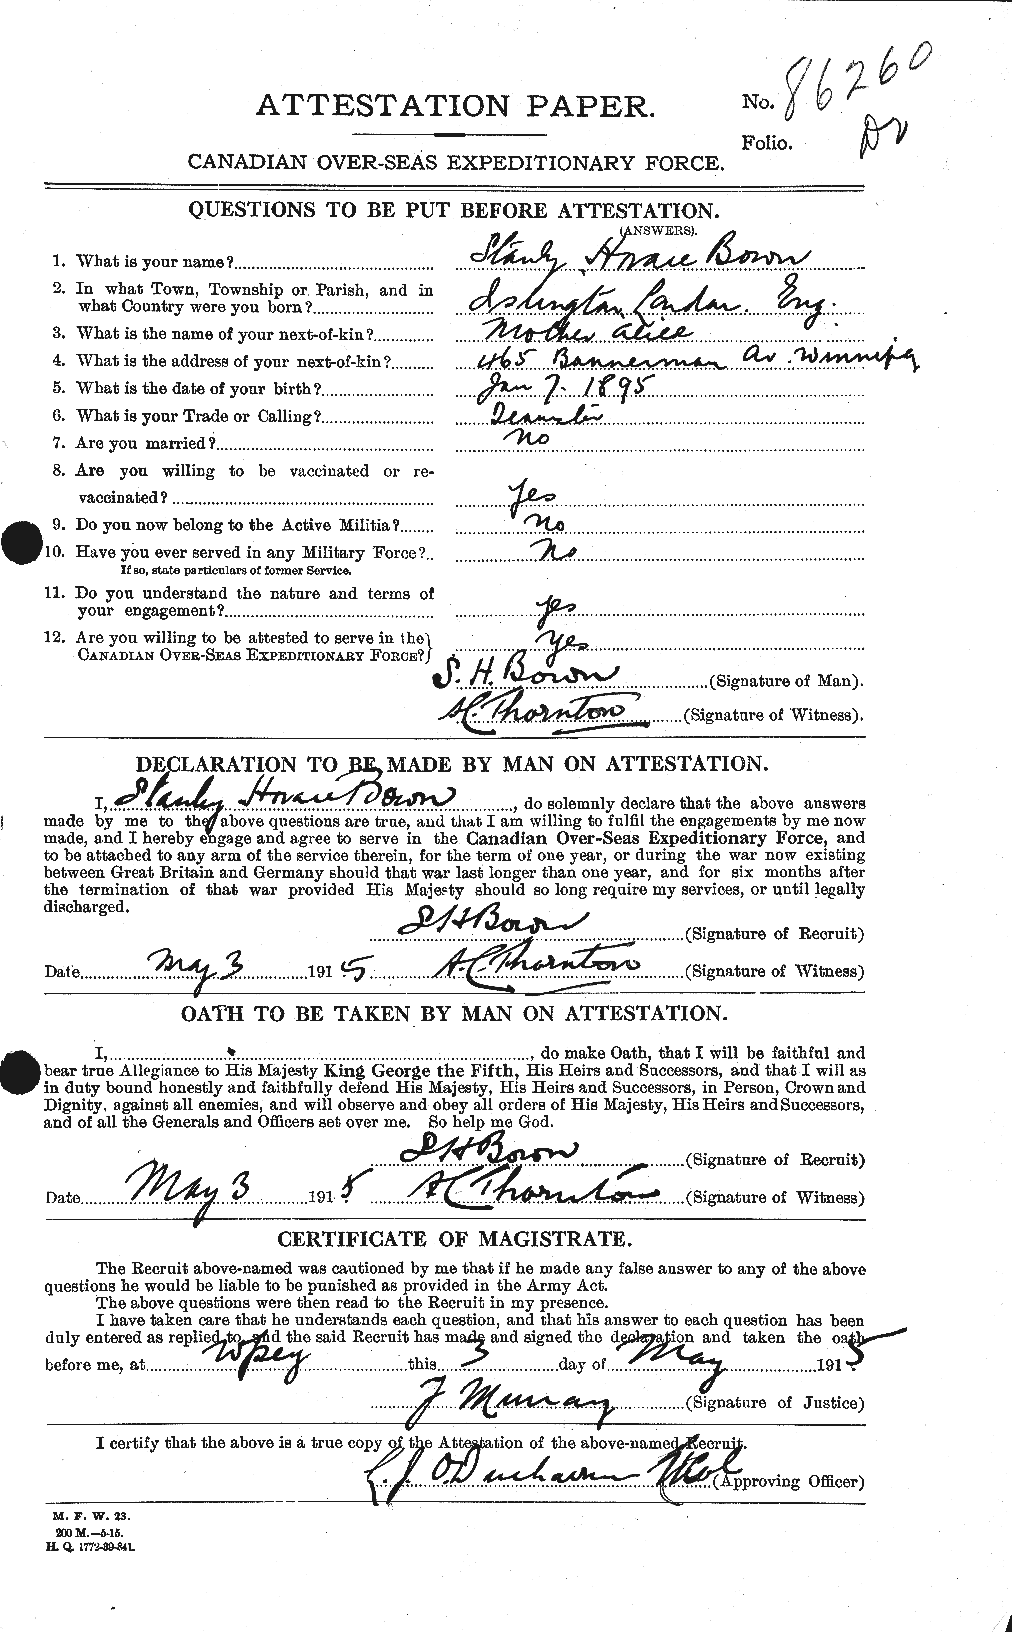 Dossiers du Personnel de la Première Guerre mondiale - CEC 256192a